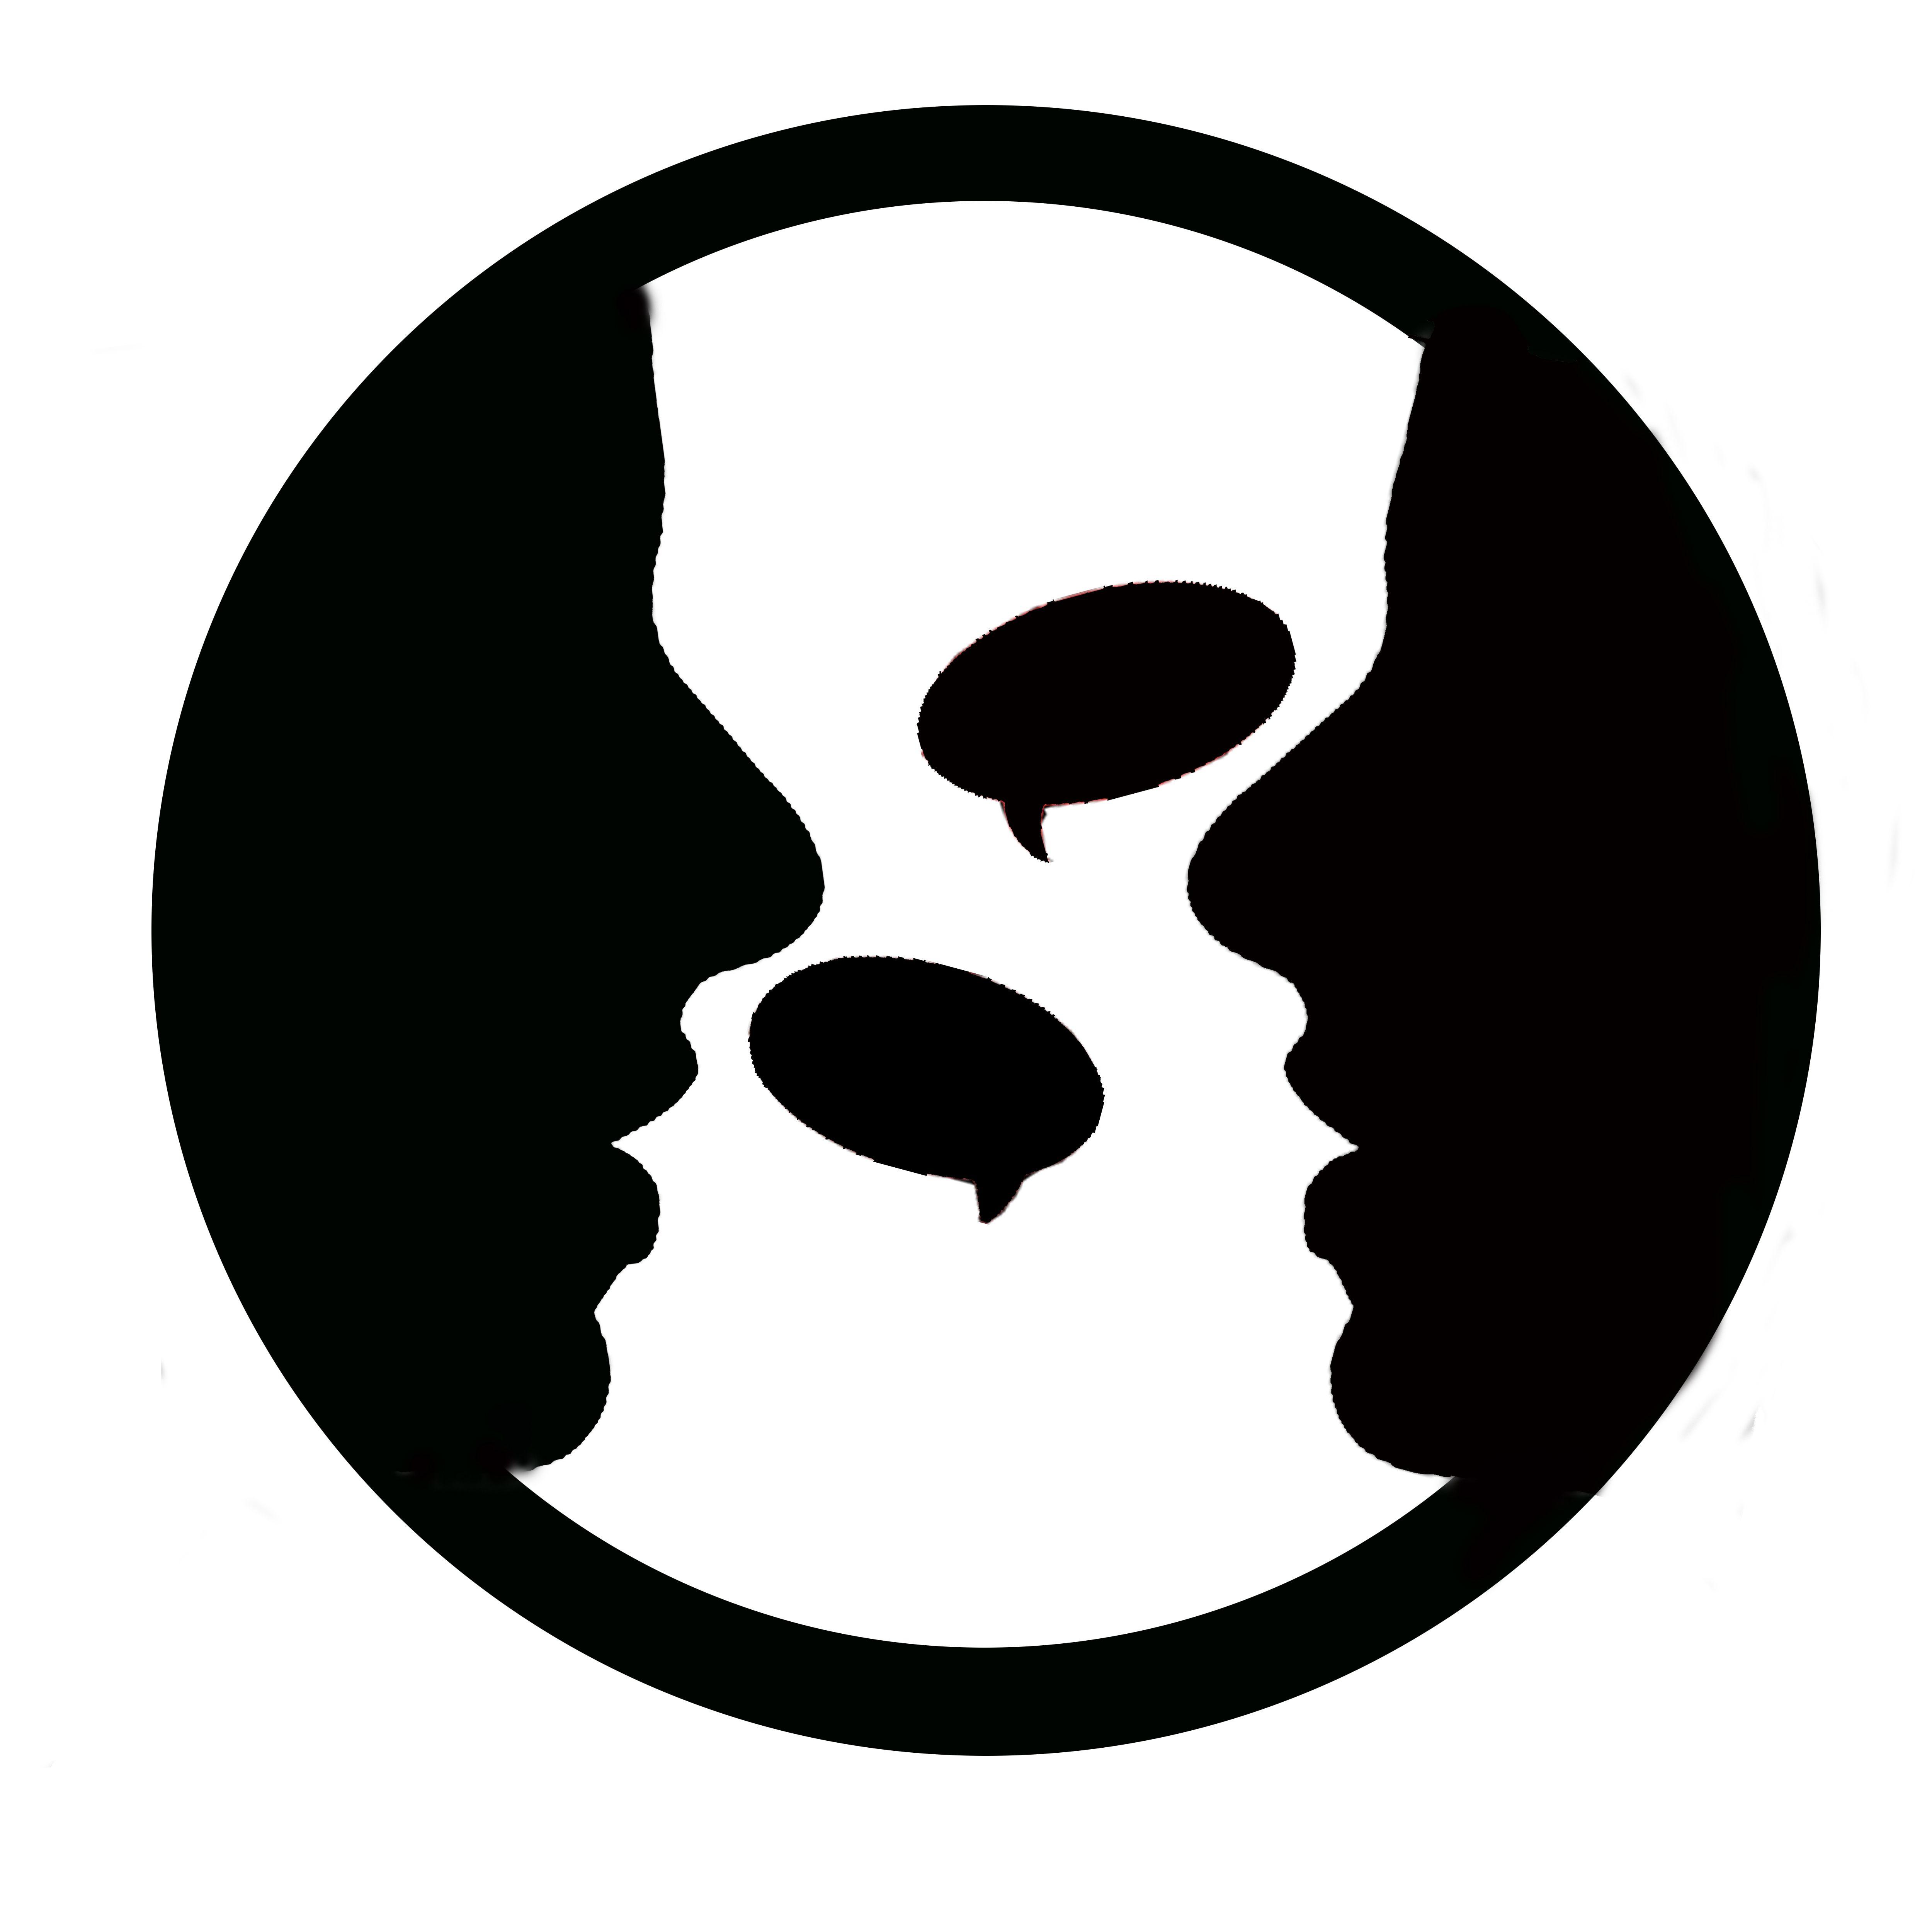 Two Black F Logo - File:Two-people-talking-logo.jpg - Wikimedia Commons